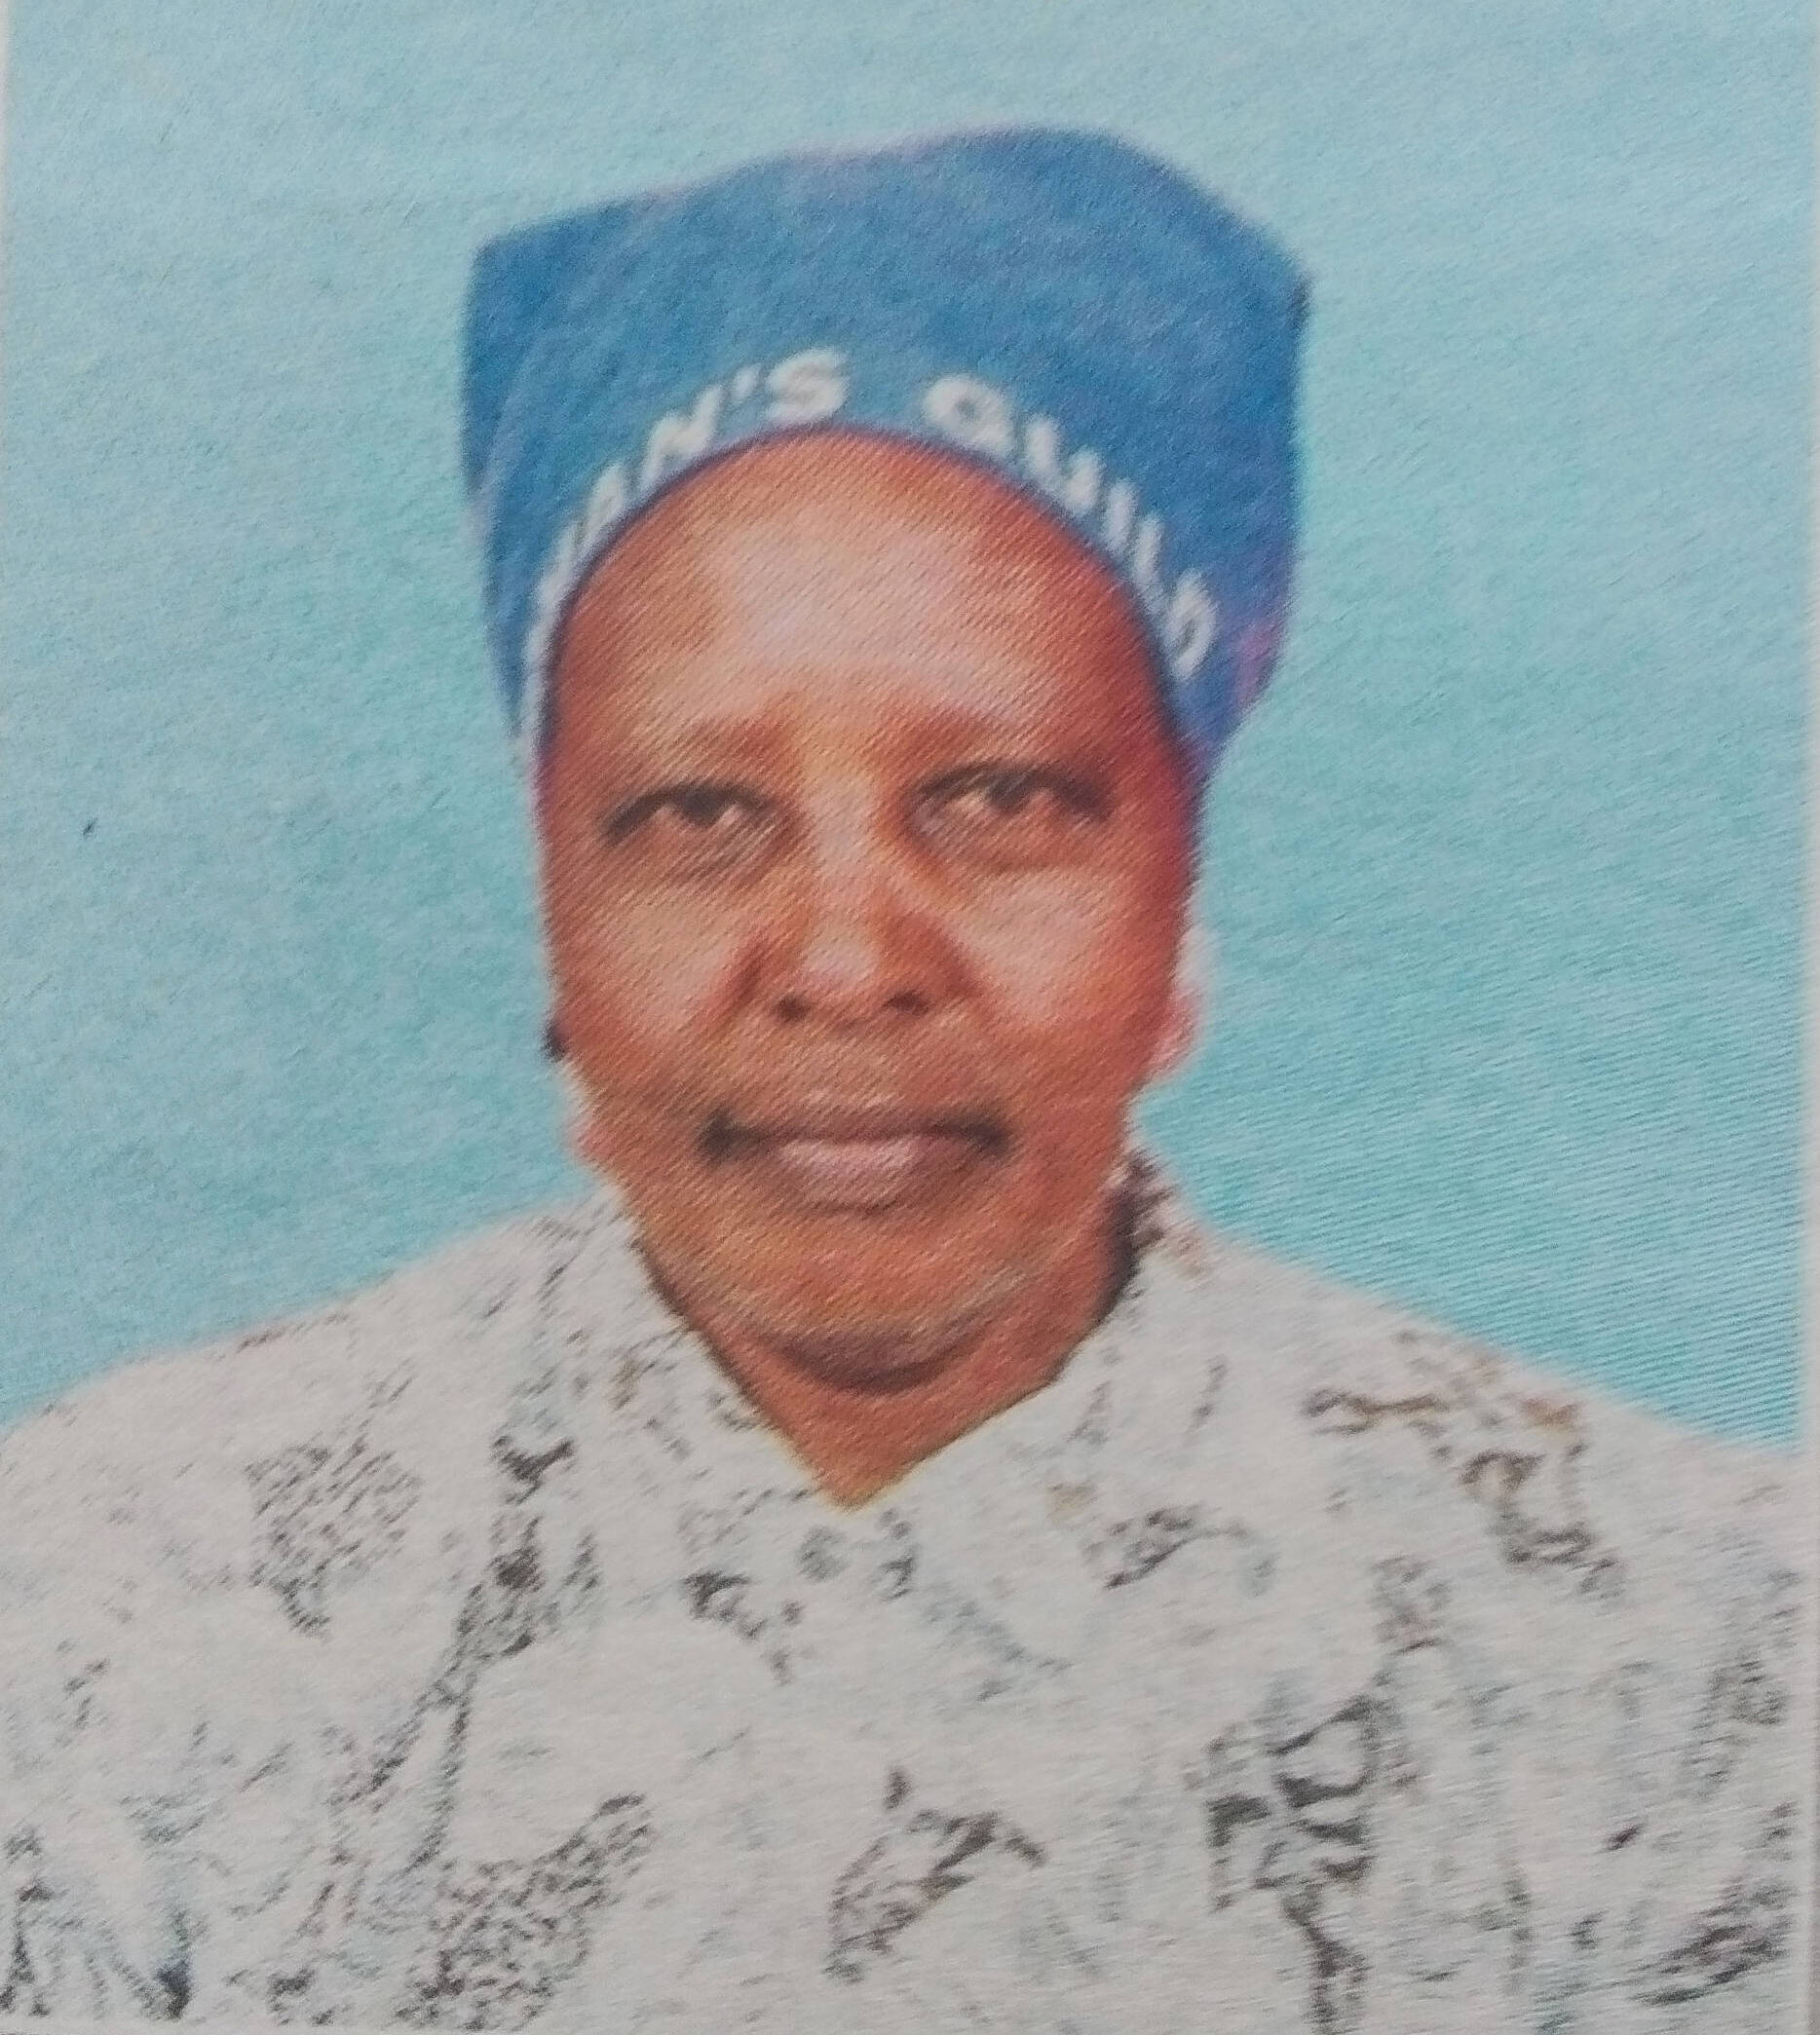 Obituary Image of Mrs Jane Wanjiru Kaniu (Nyina wa Andu) 1944 - 11/03/2017